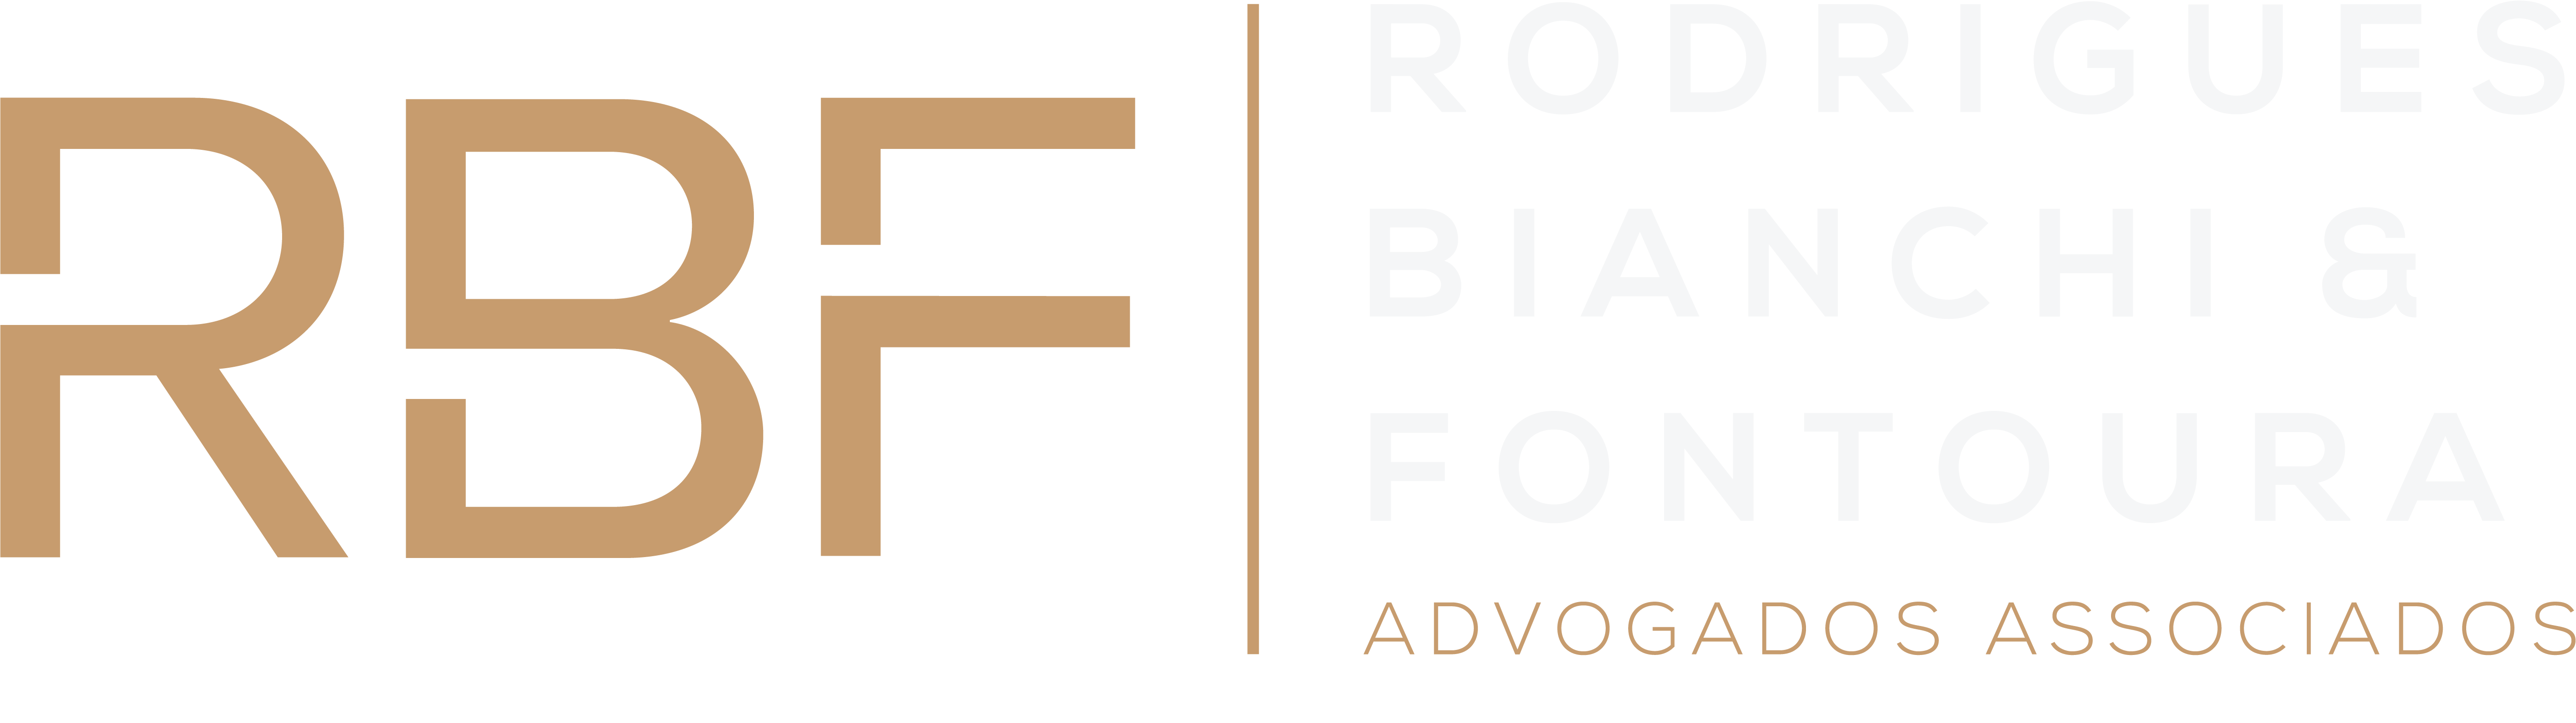 RBF Rodrigues, Razzera & Fontoura Advogados Associados